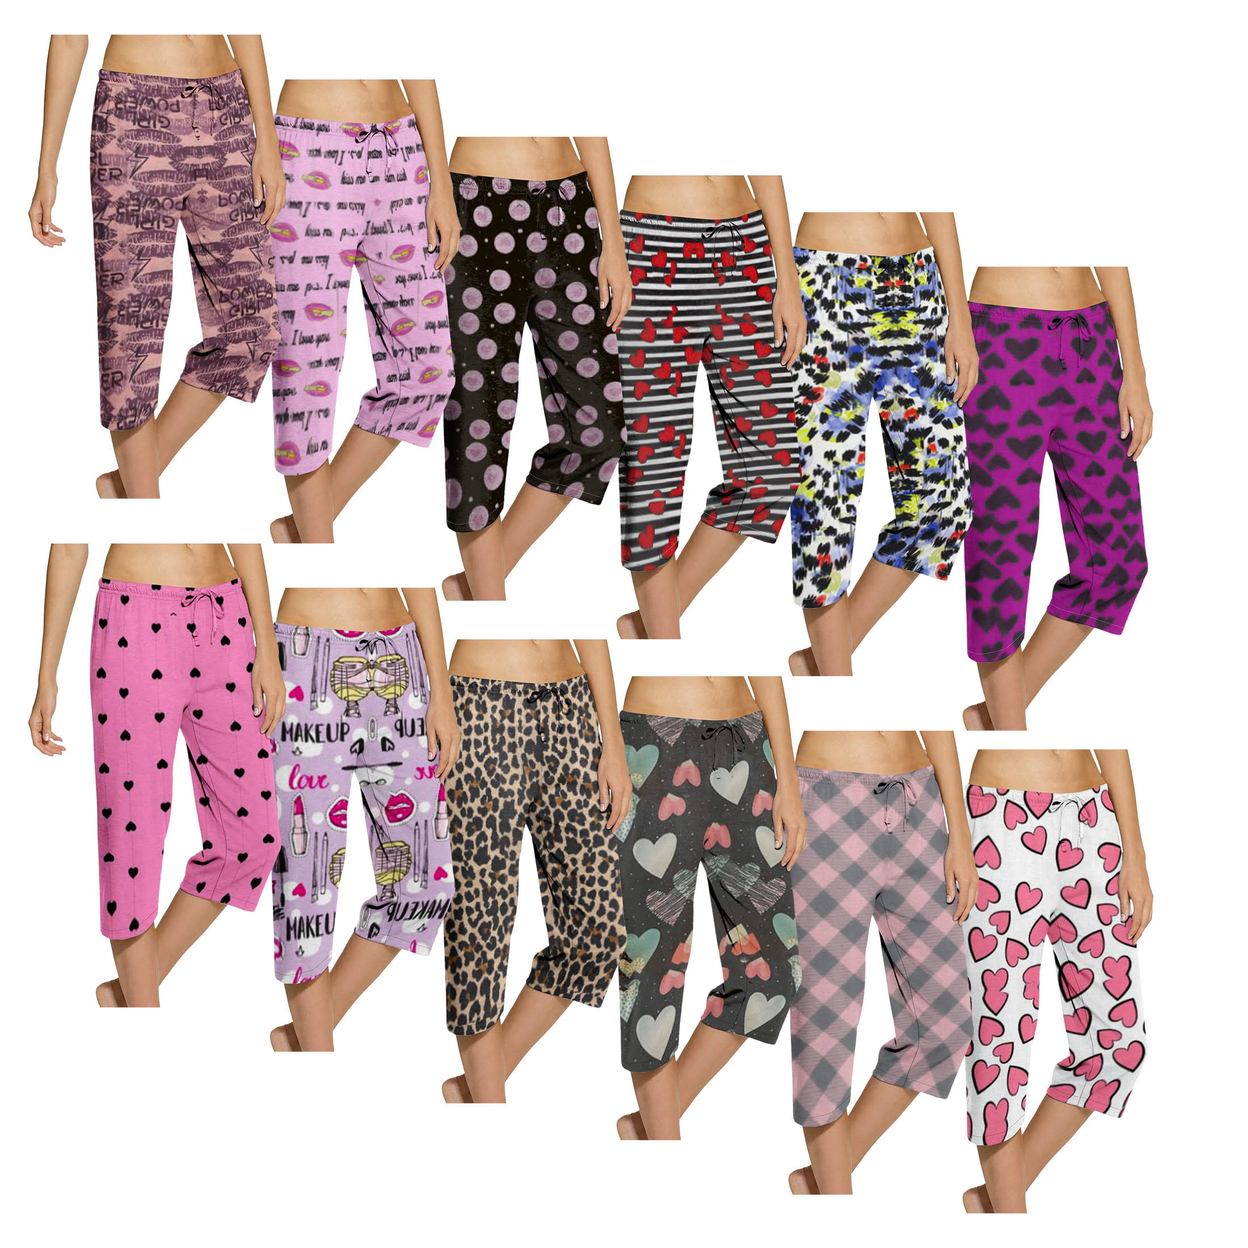 Women's Ultra Soft Cozy Terry Knit Comfy Capri Sleepwear Pajama Bottoms - Small, Animal